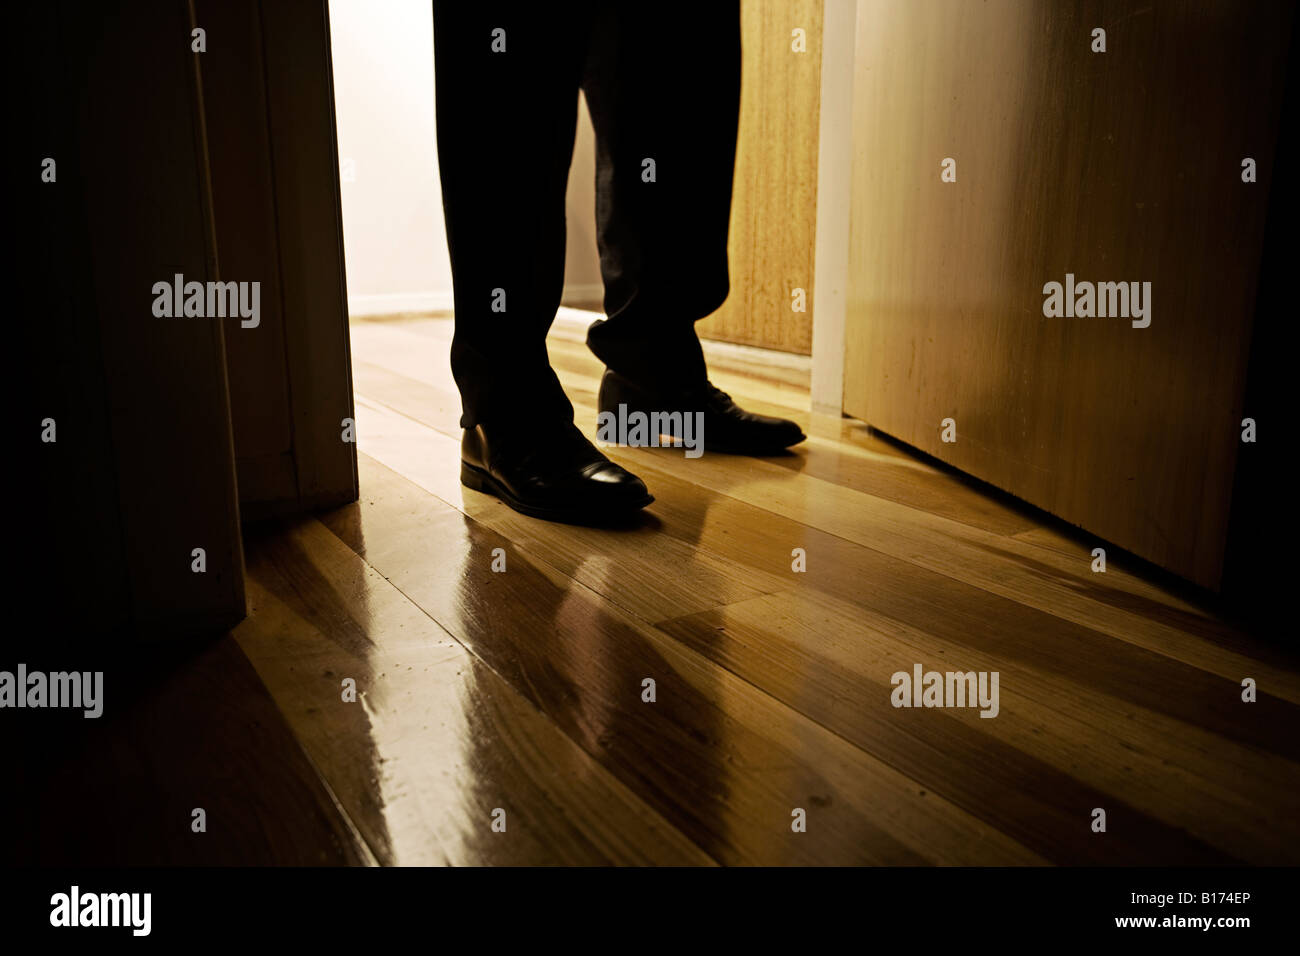 Les pieds de l'homme chaussures en cuir noir debout dans un intérieur de porte avec plancher en bois Banque D'Images